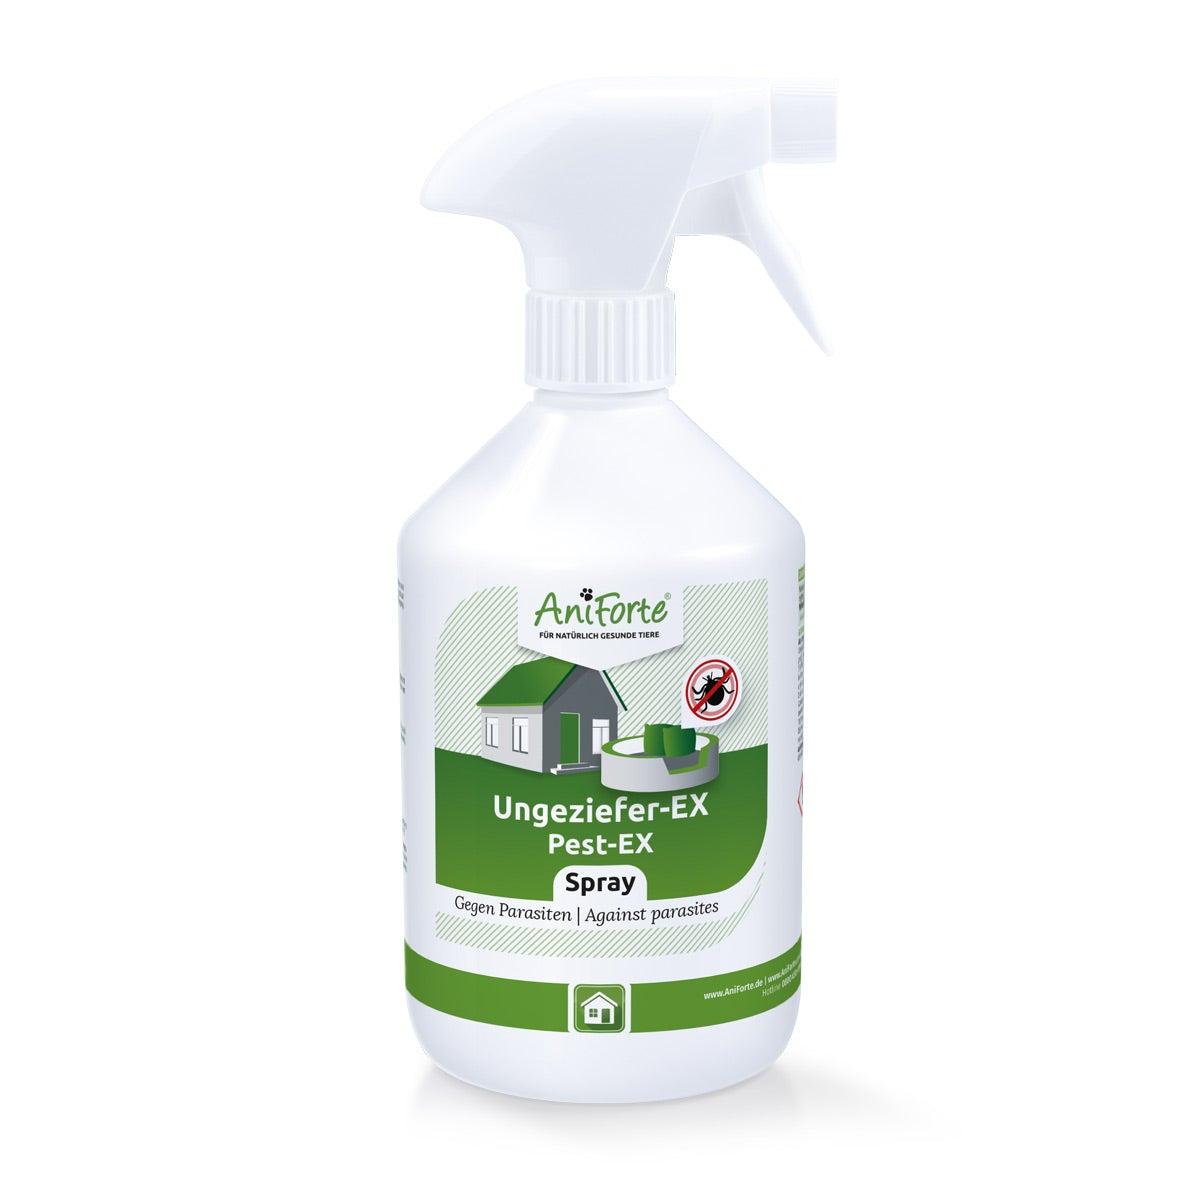 Aniforte Ungeziefer-EX Spray 500 ml